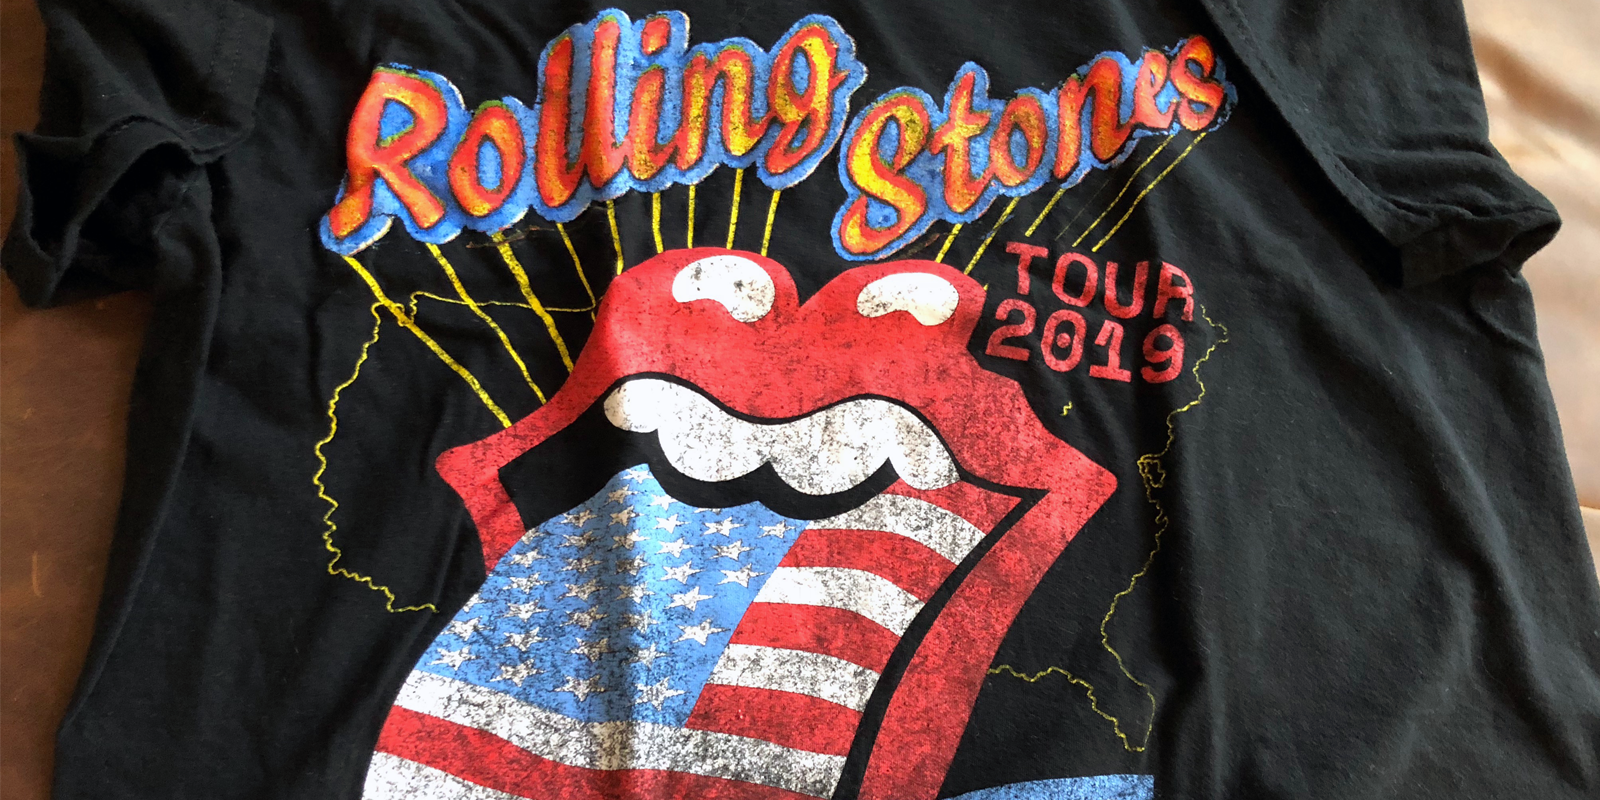 Rolling Stones tour t-shirt